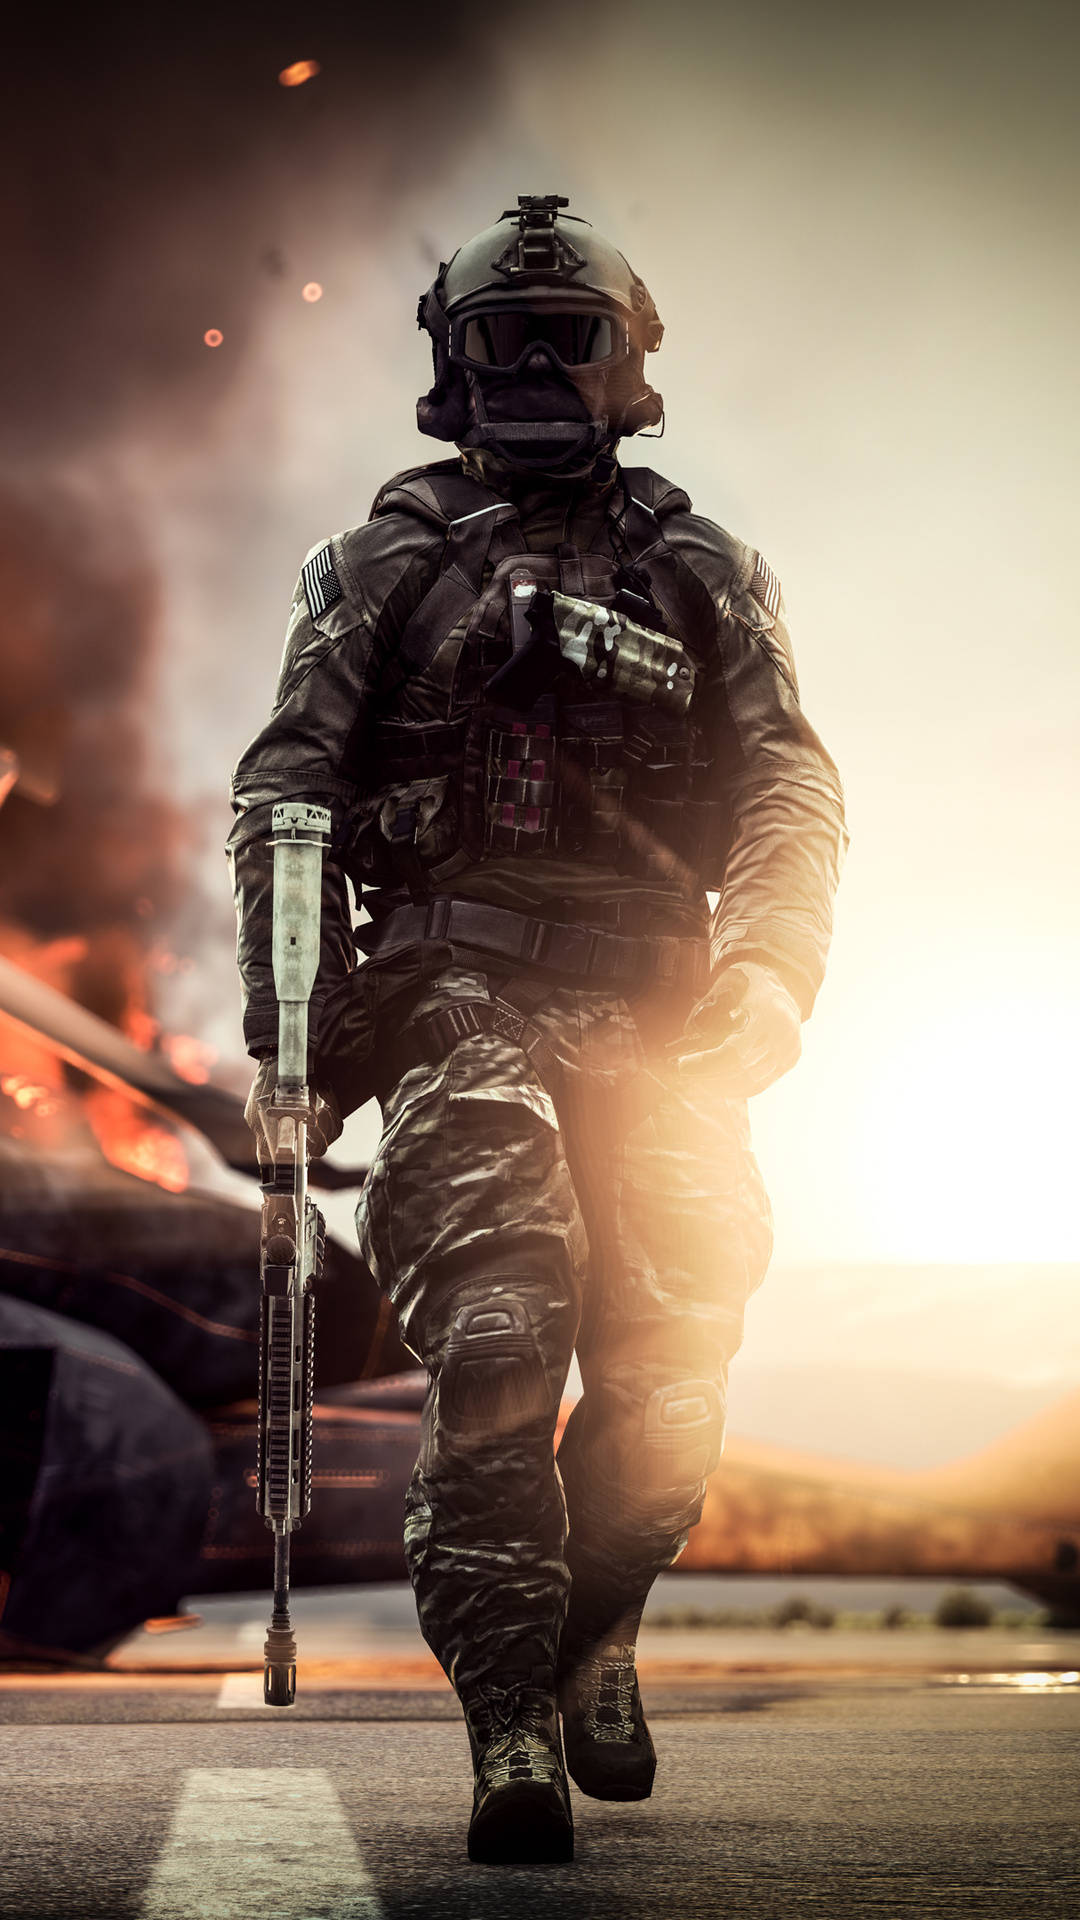 Walking Soldier In Full Gear Battlefield 4 Phone Wallpaper